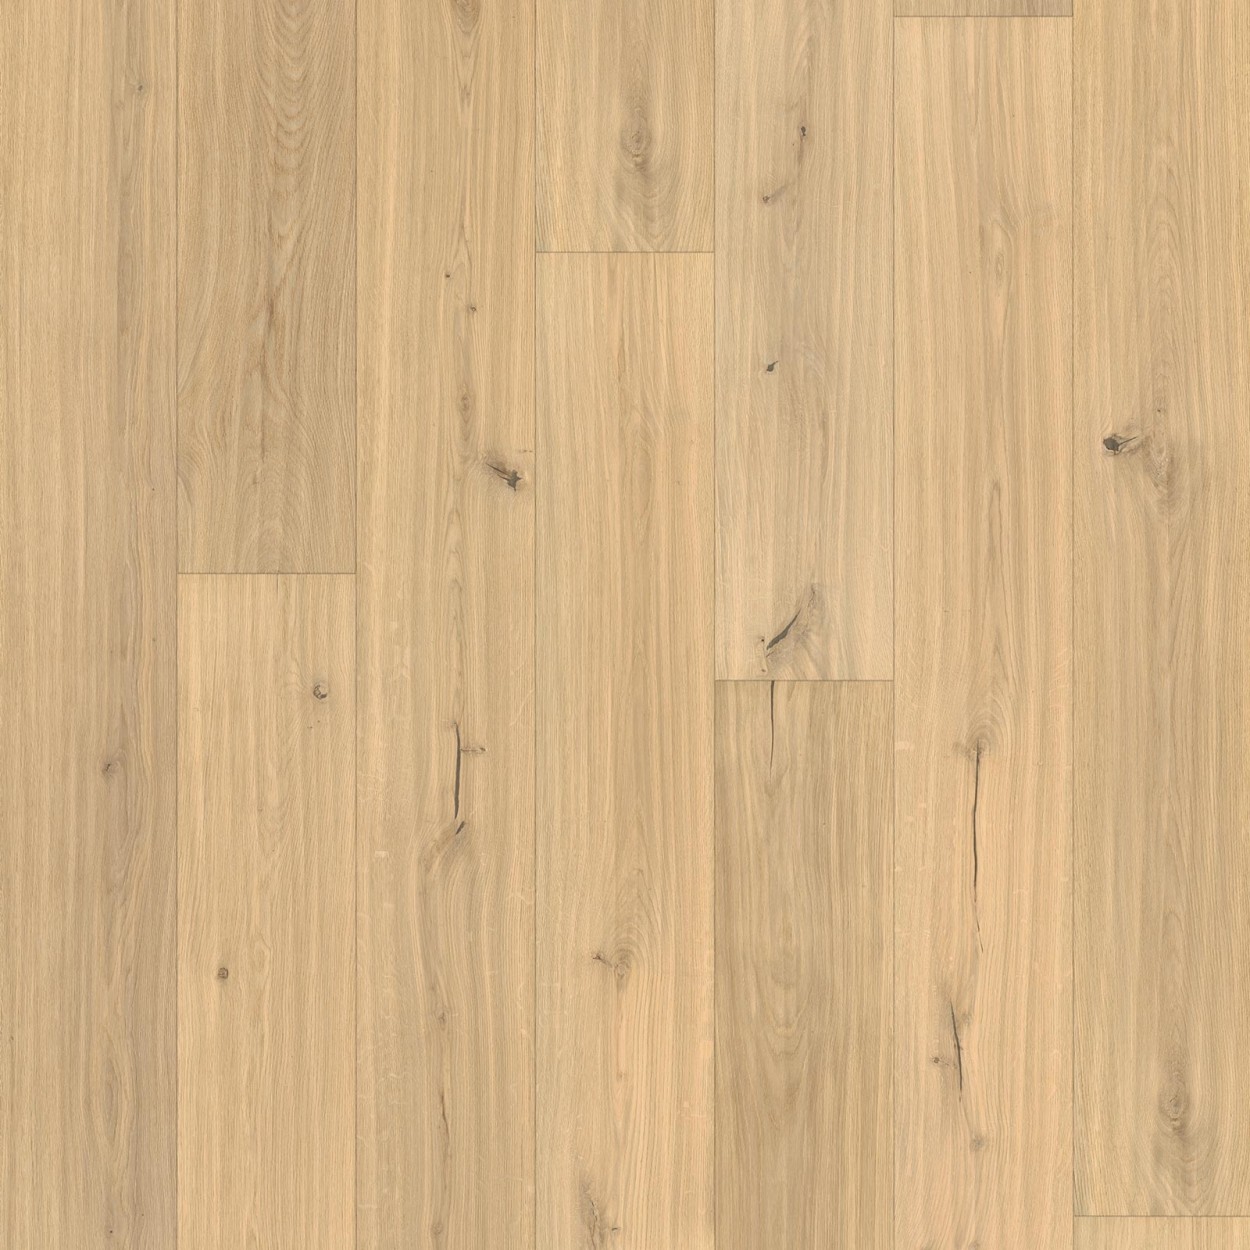 Karras - Ter Hürne - Πάτωμα Προγυαλισμένο Unique Collection planked oak unique raw effect impulsive